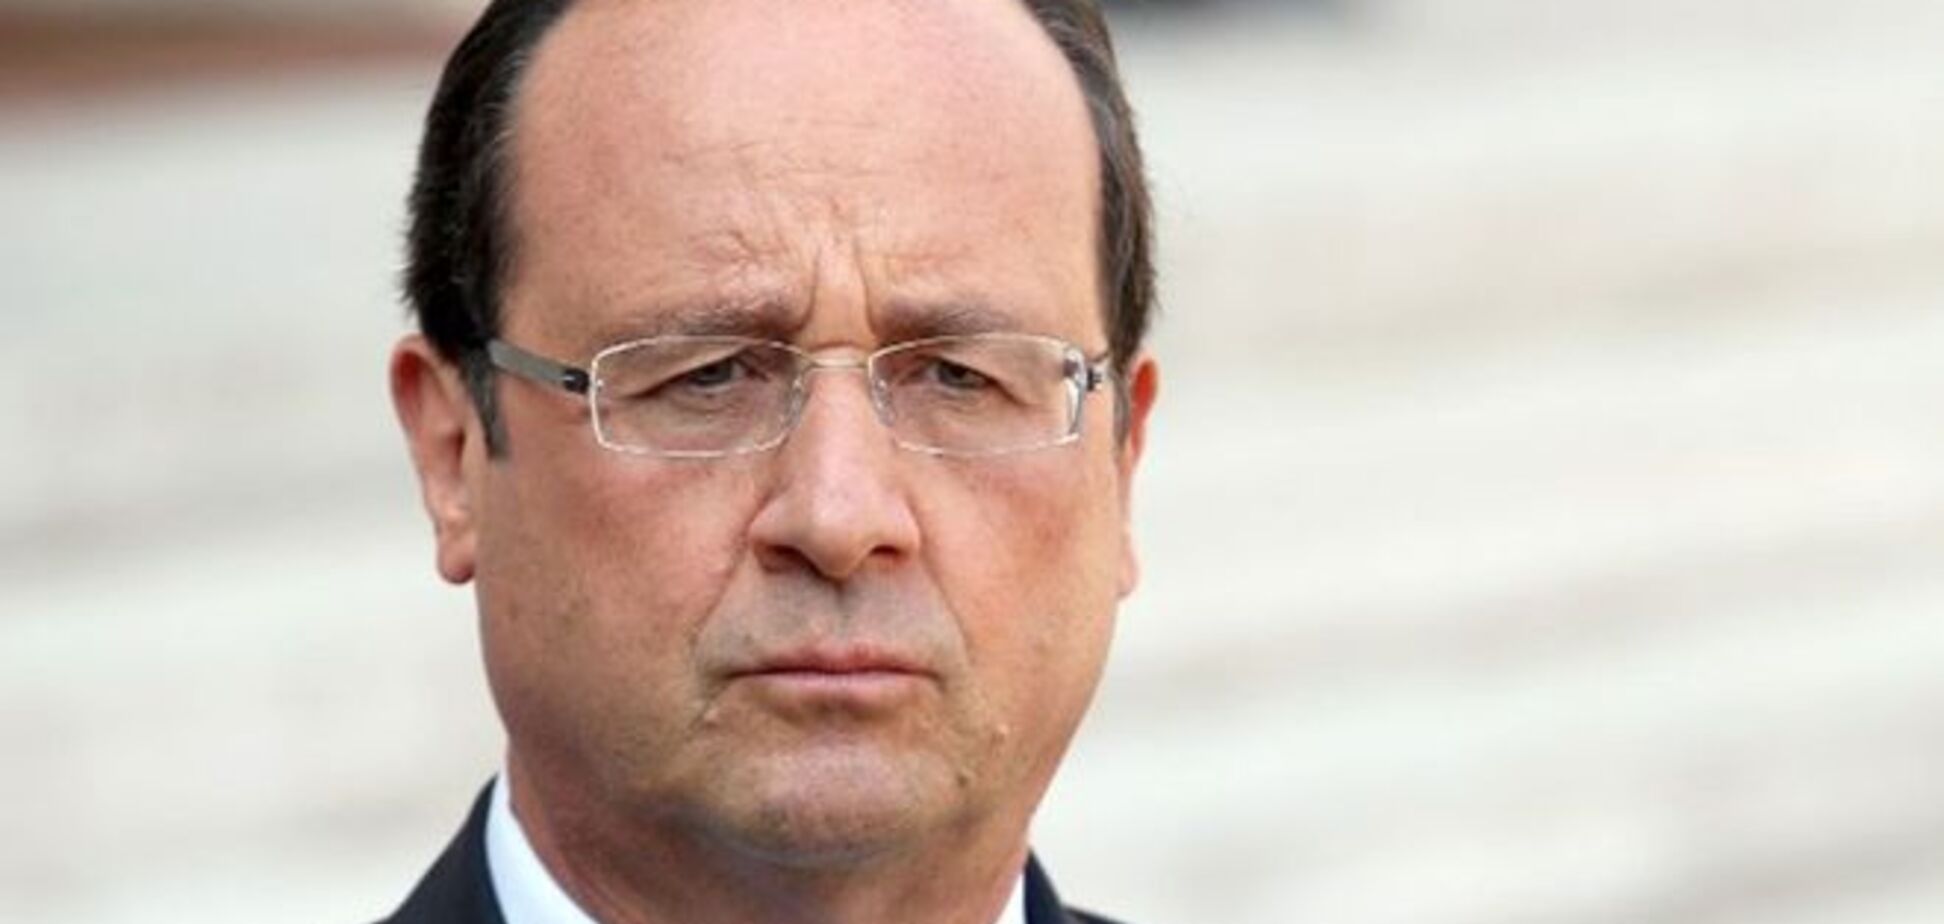 Теракт во Франции: Олланд ввел высший уровень антитеррористического режима 